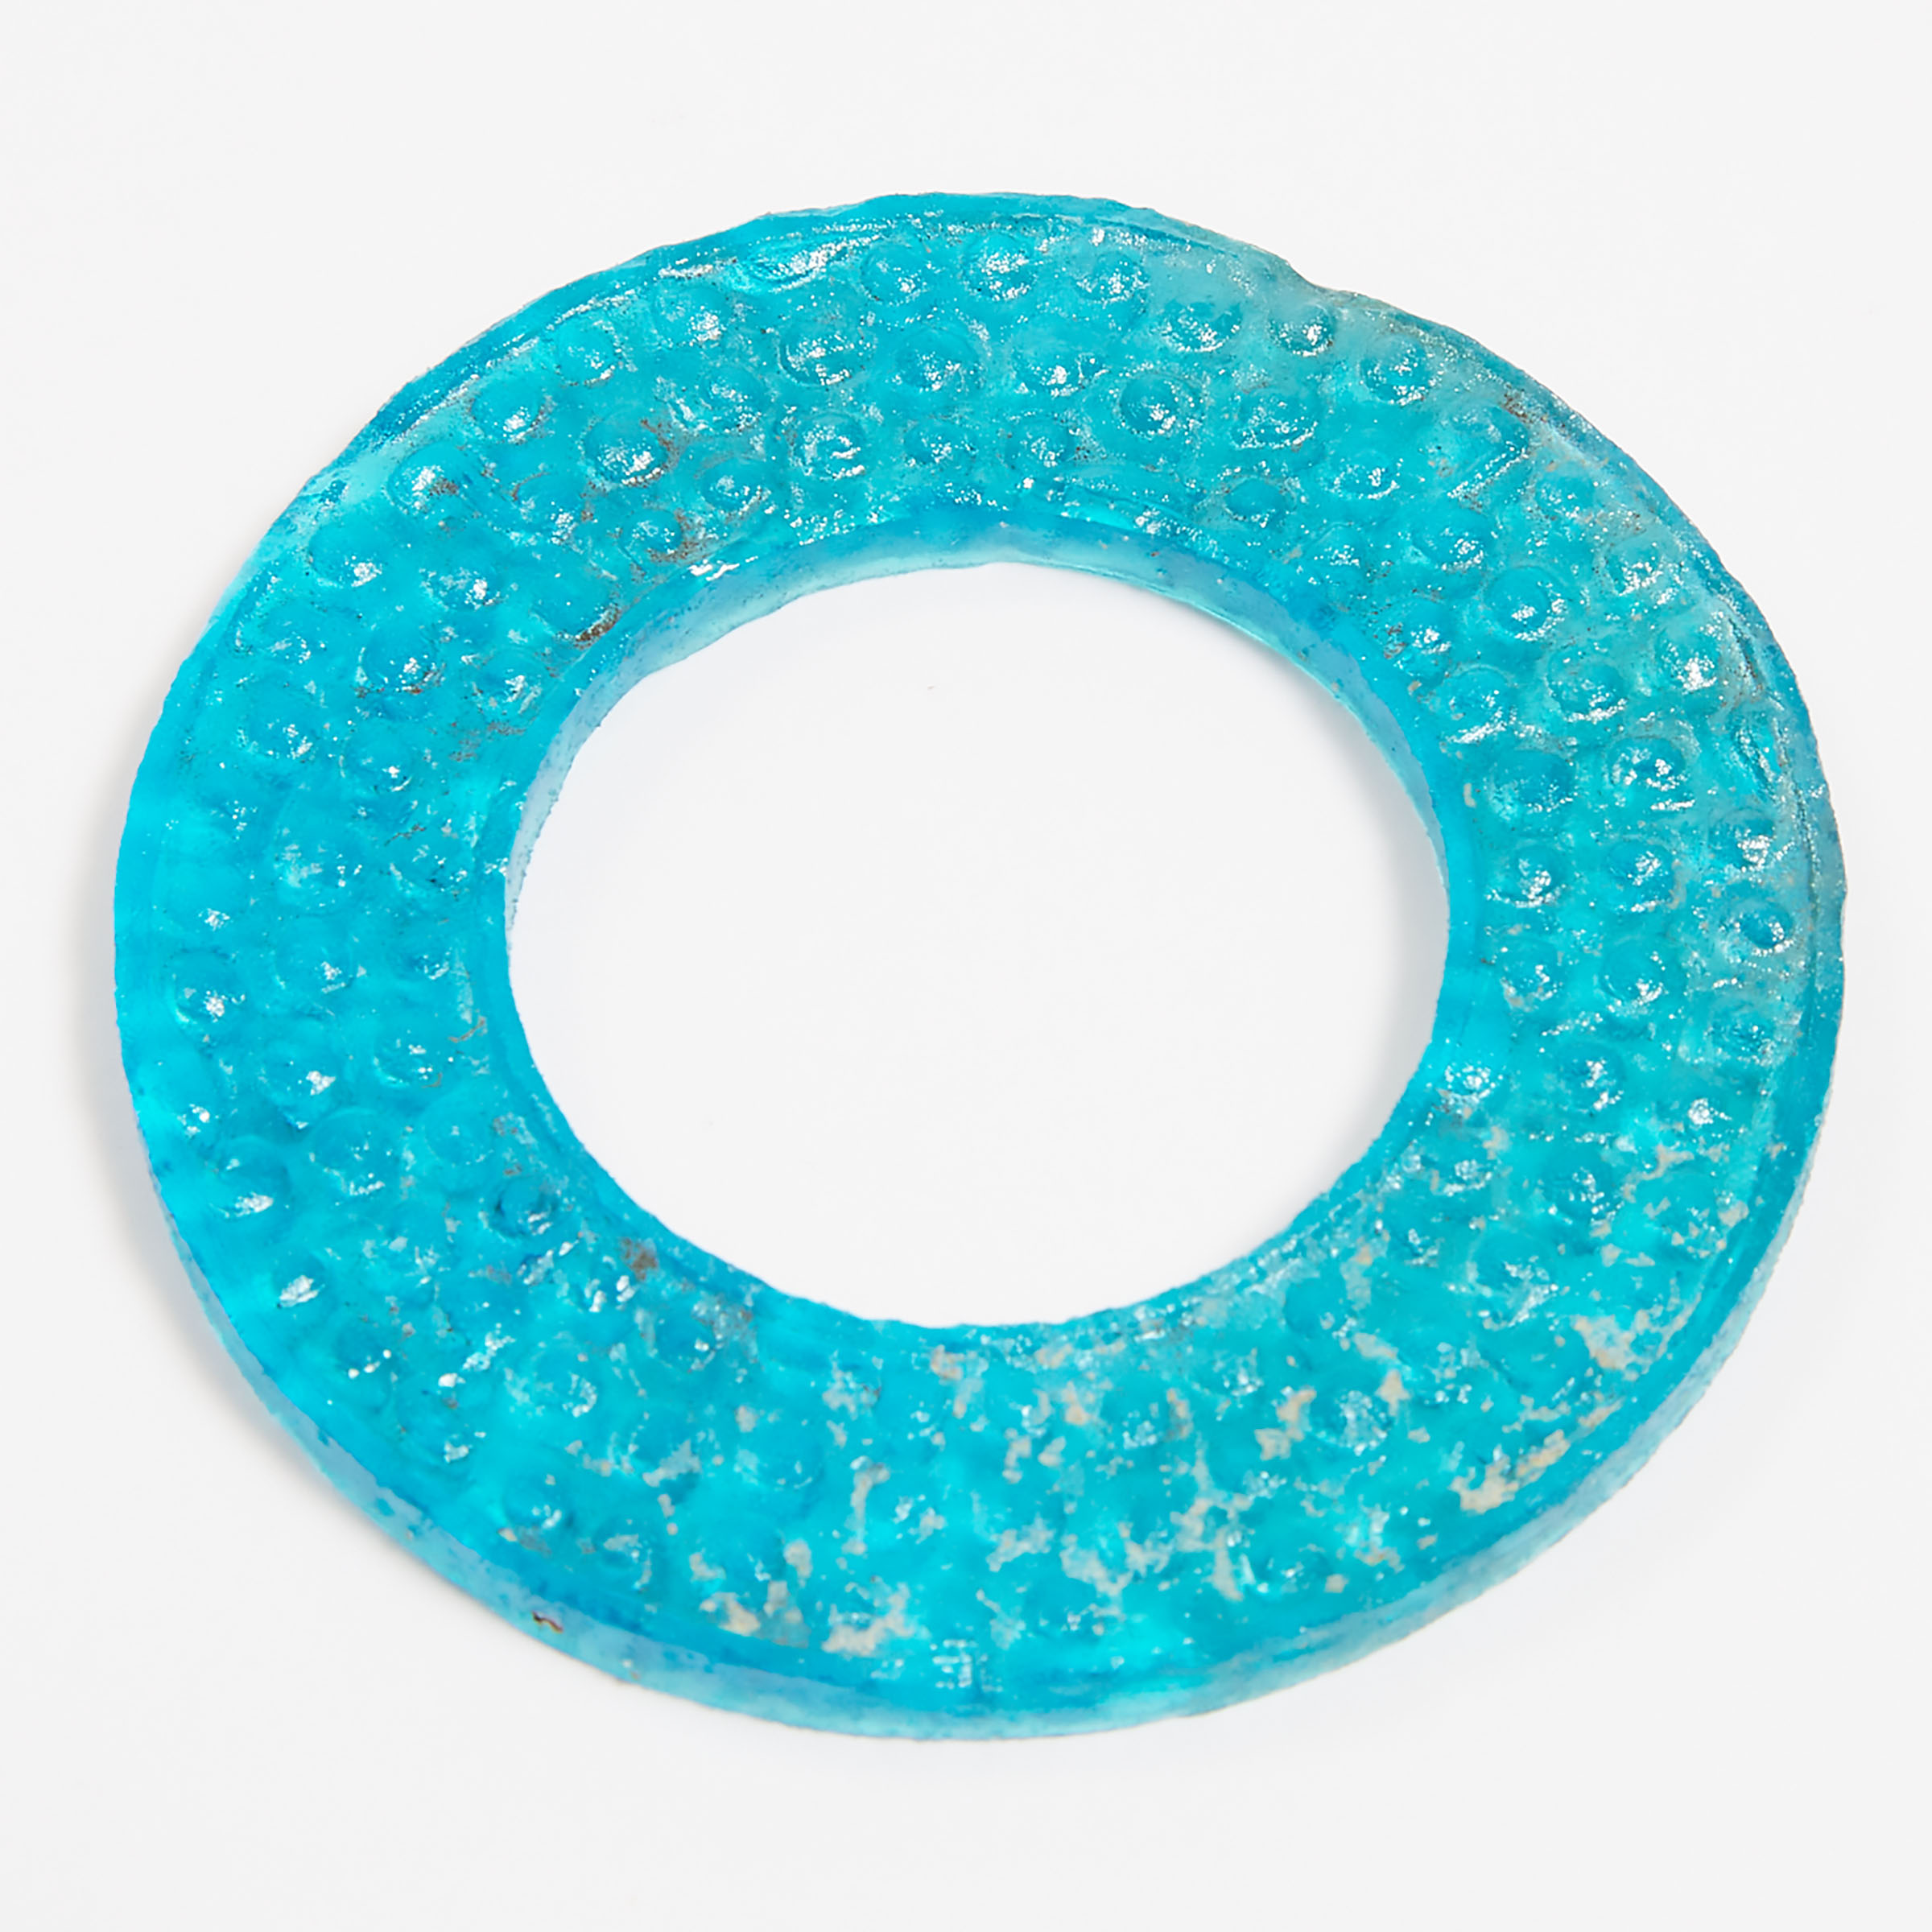 A Blue Glass Bi Disc